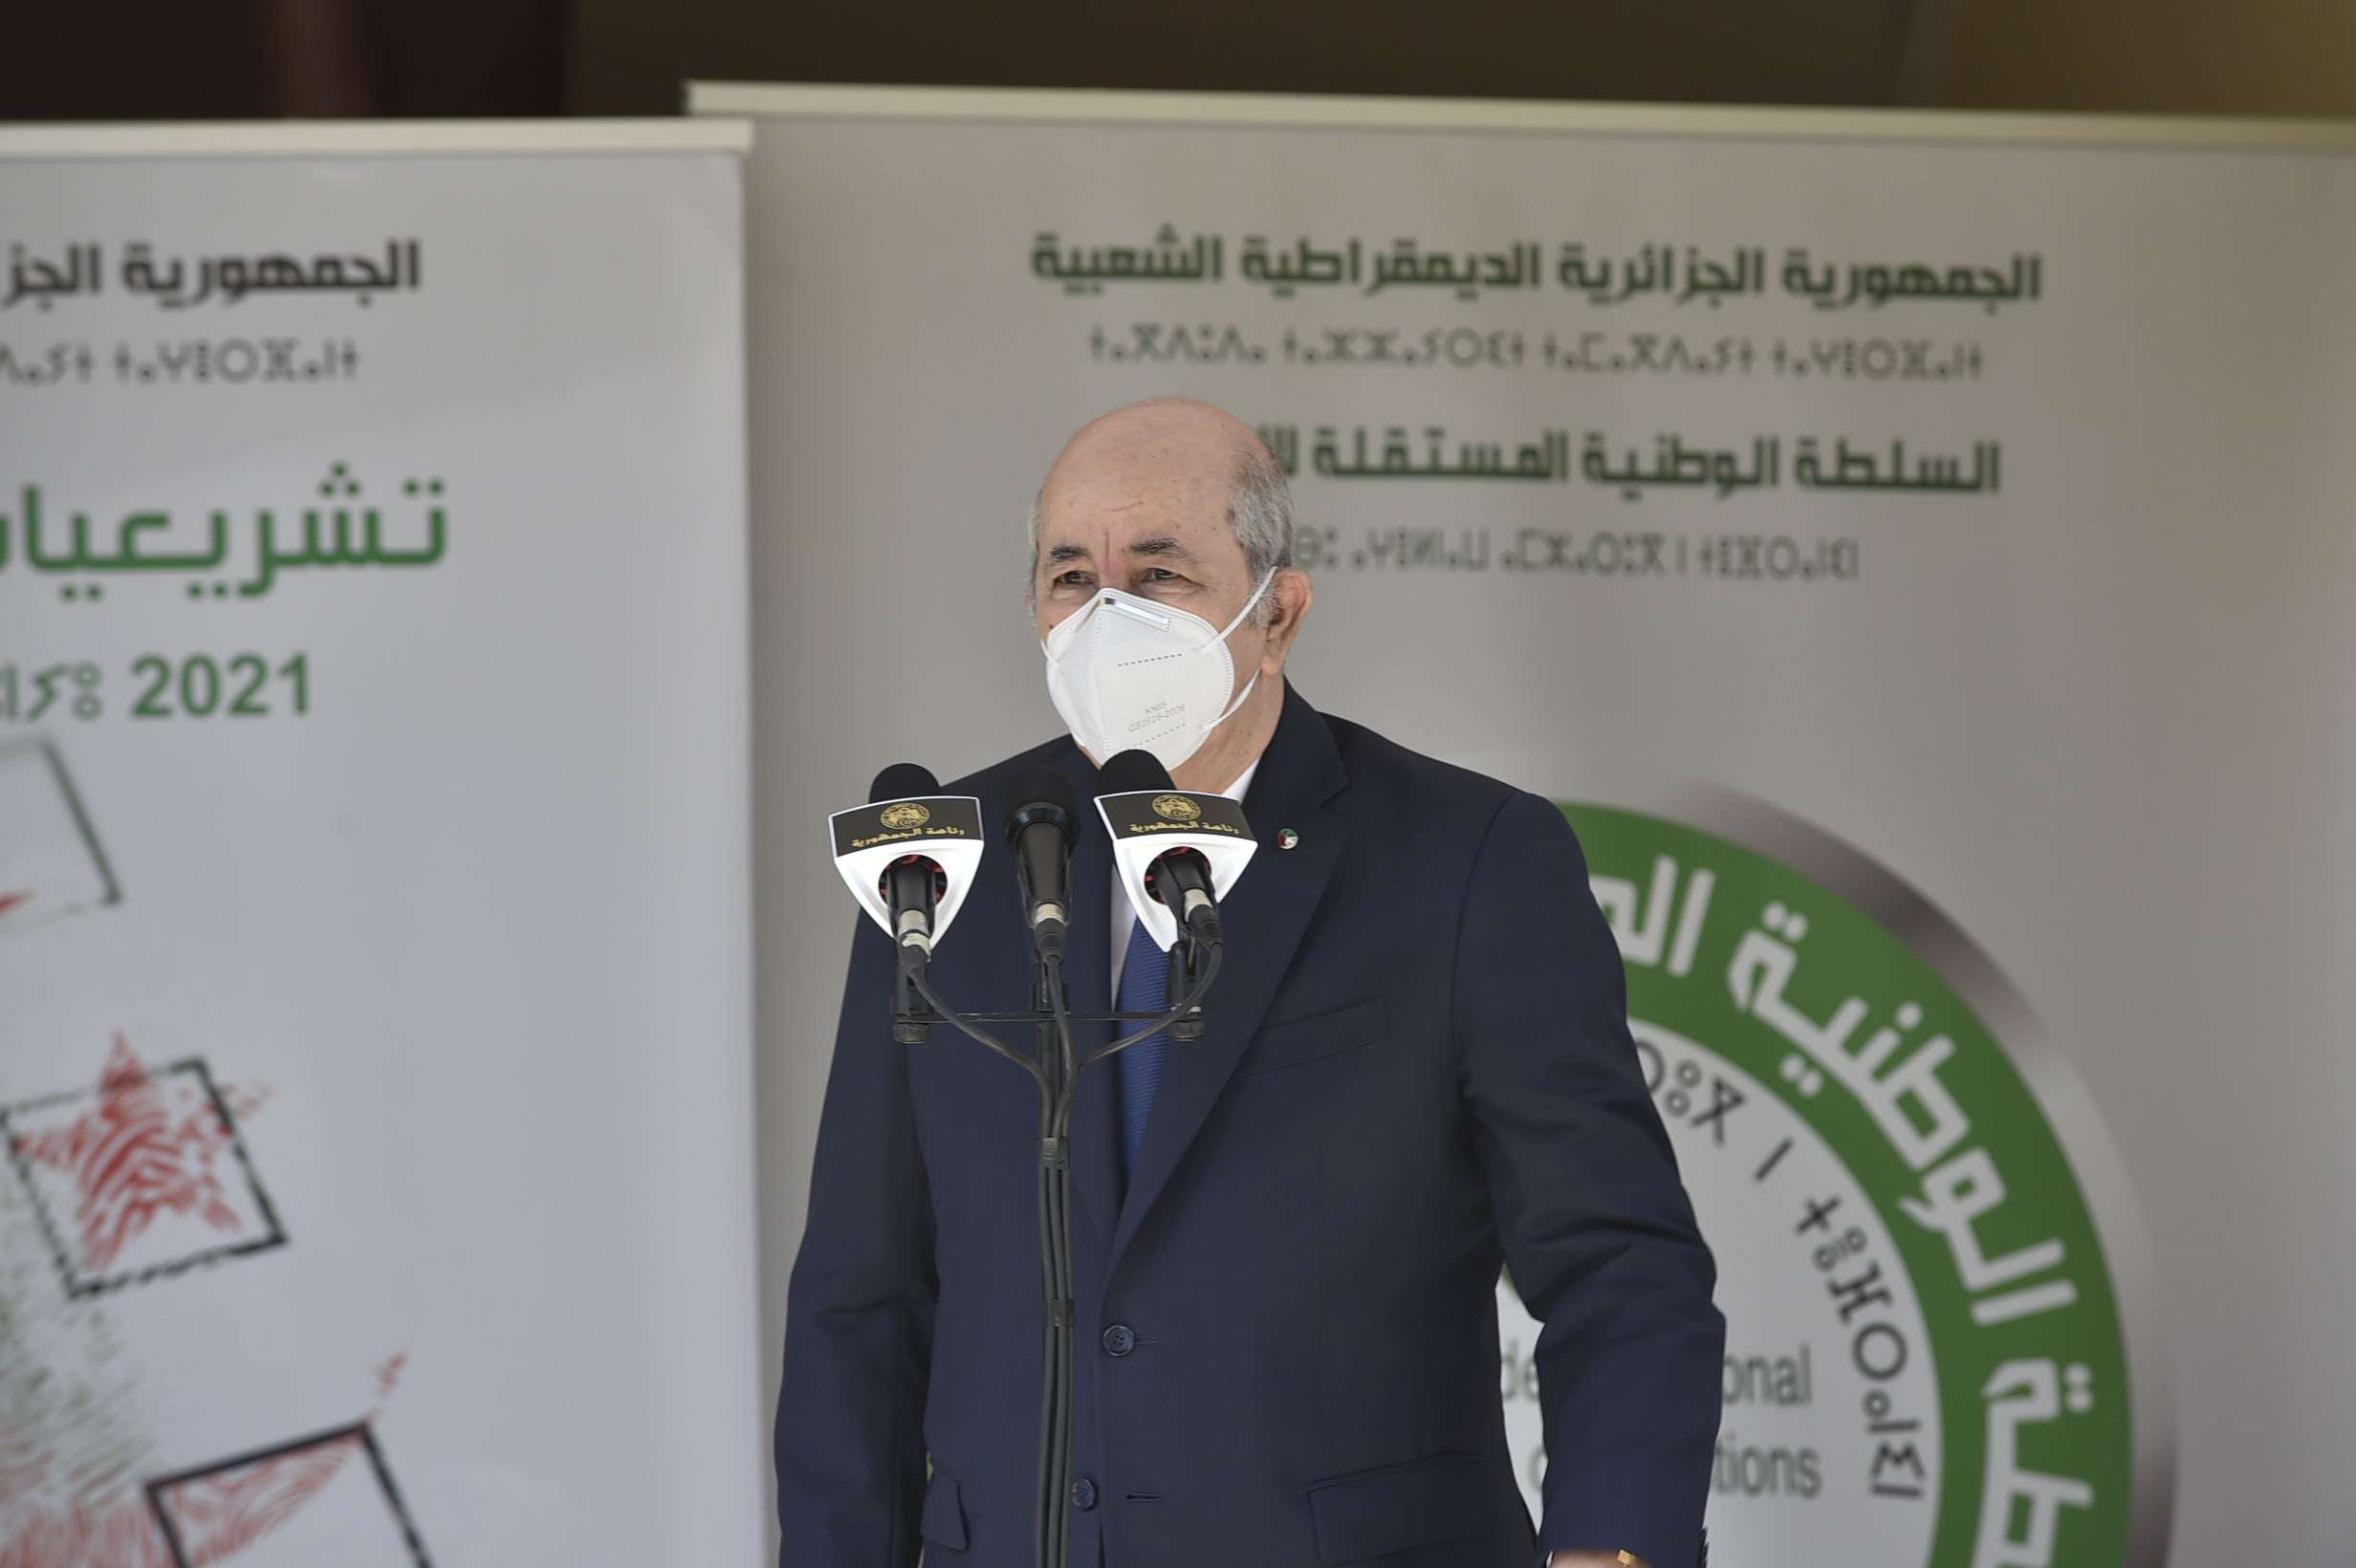 الرئيس الجزائري فرض خارطة سياسية على المقاس متجاهلا حراك شعبيا يدعوه للرحيل